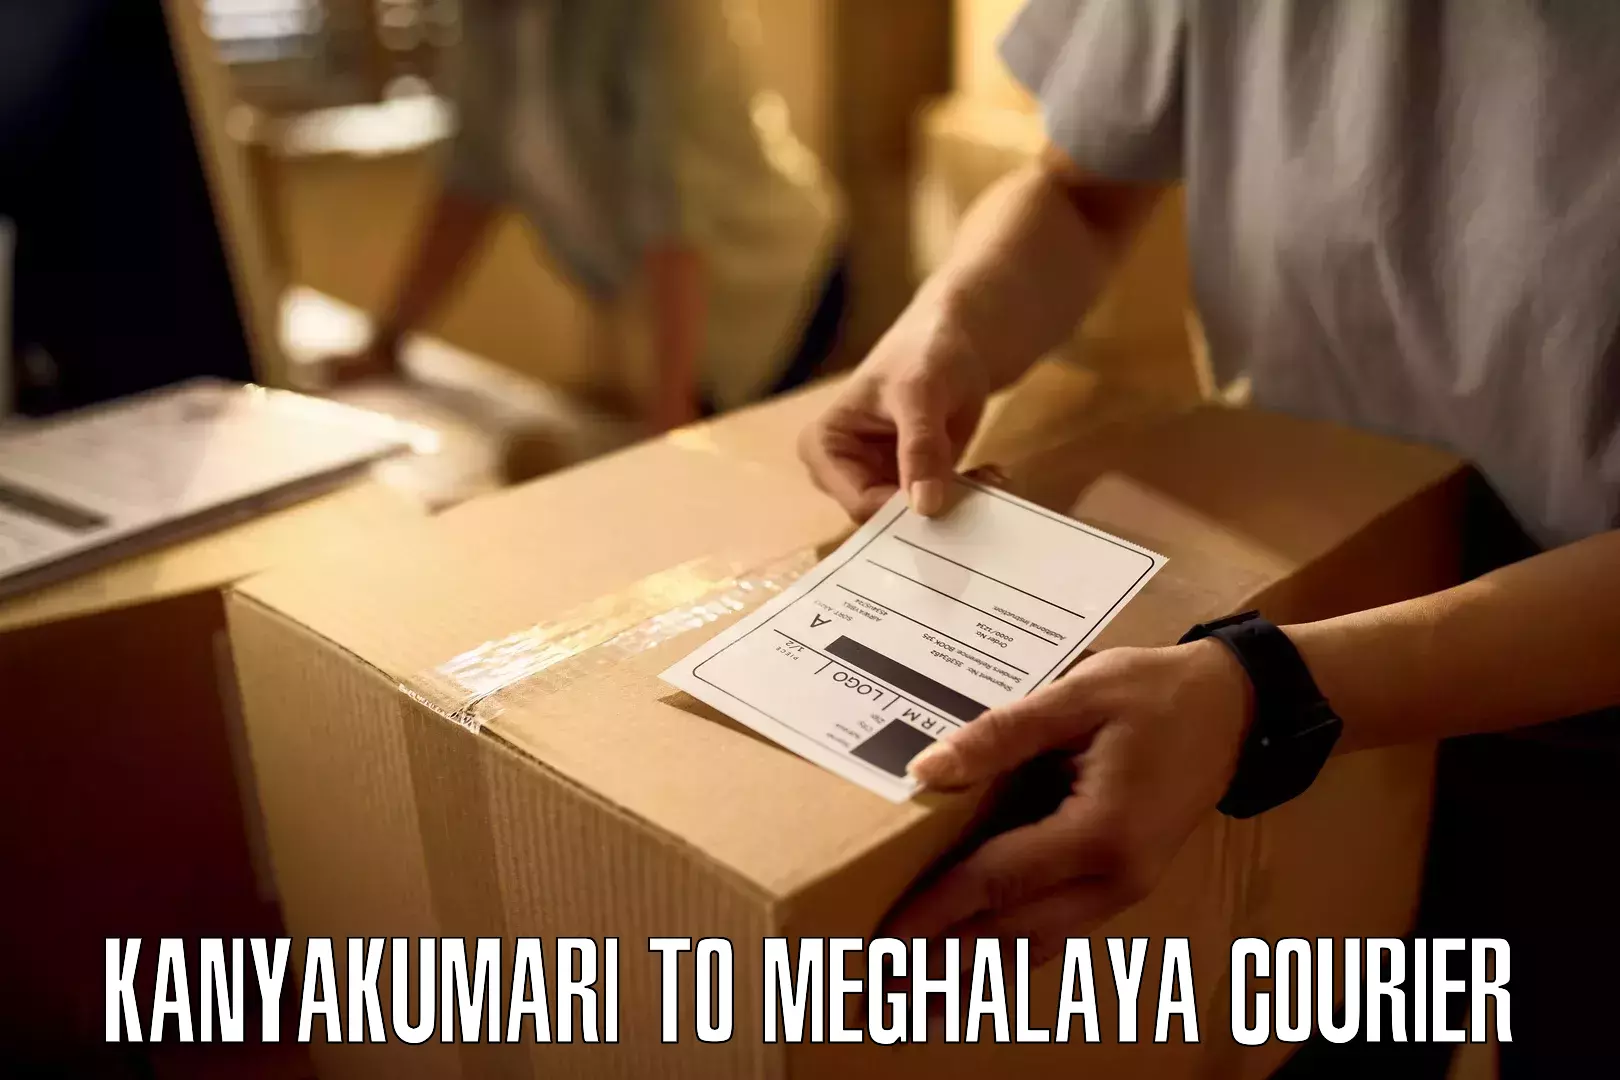 Doorstep delivery service Kanyakumari to Dkhiah West